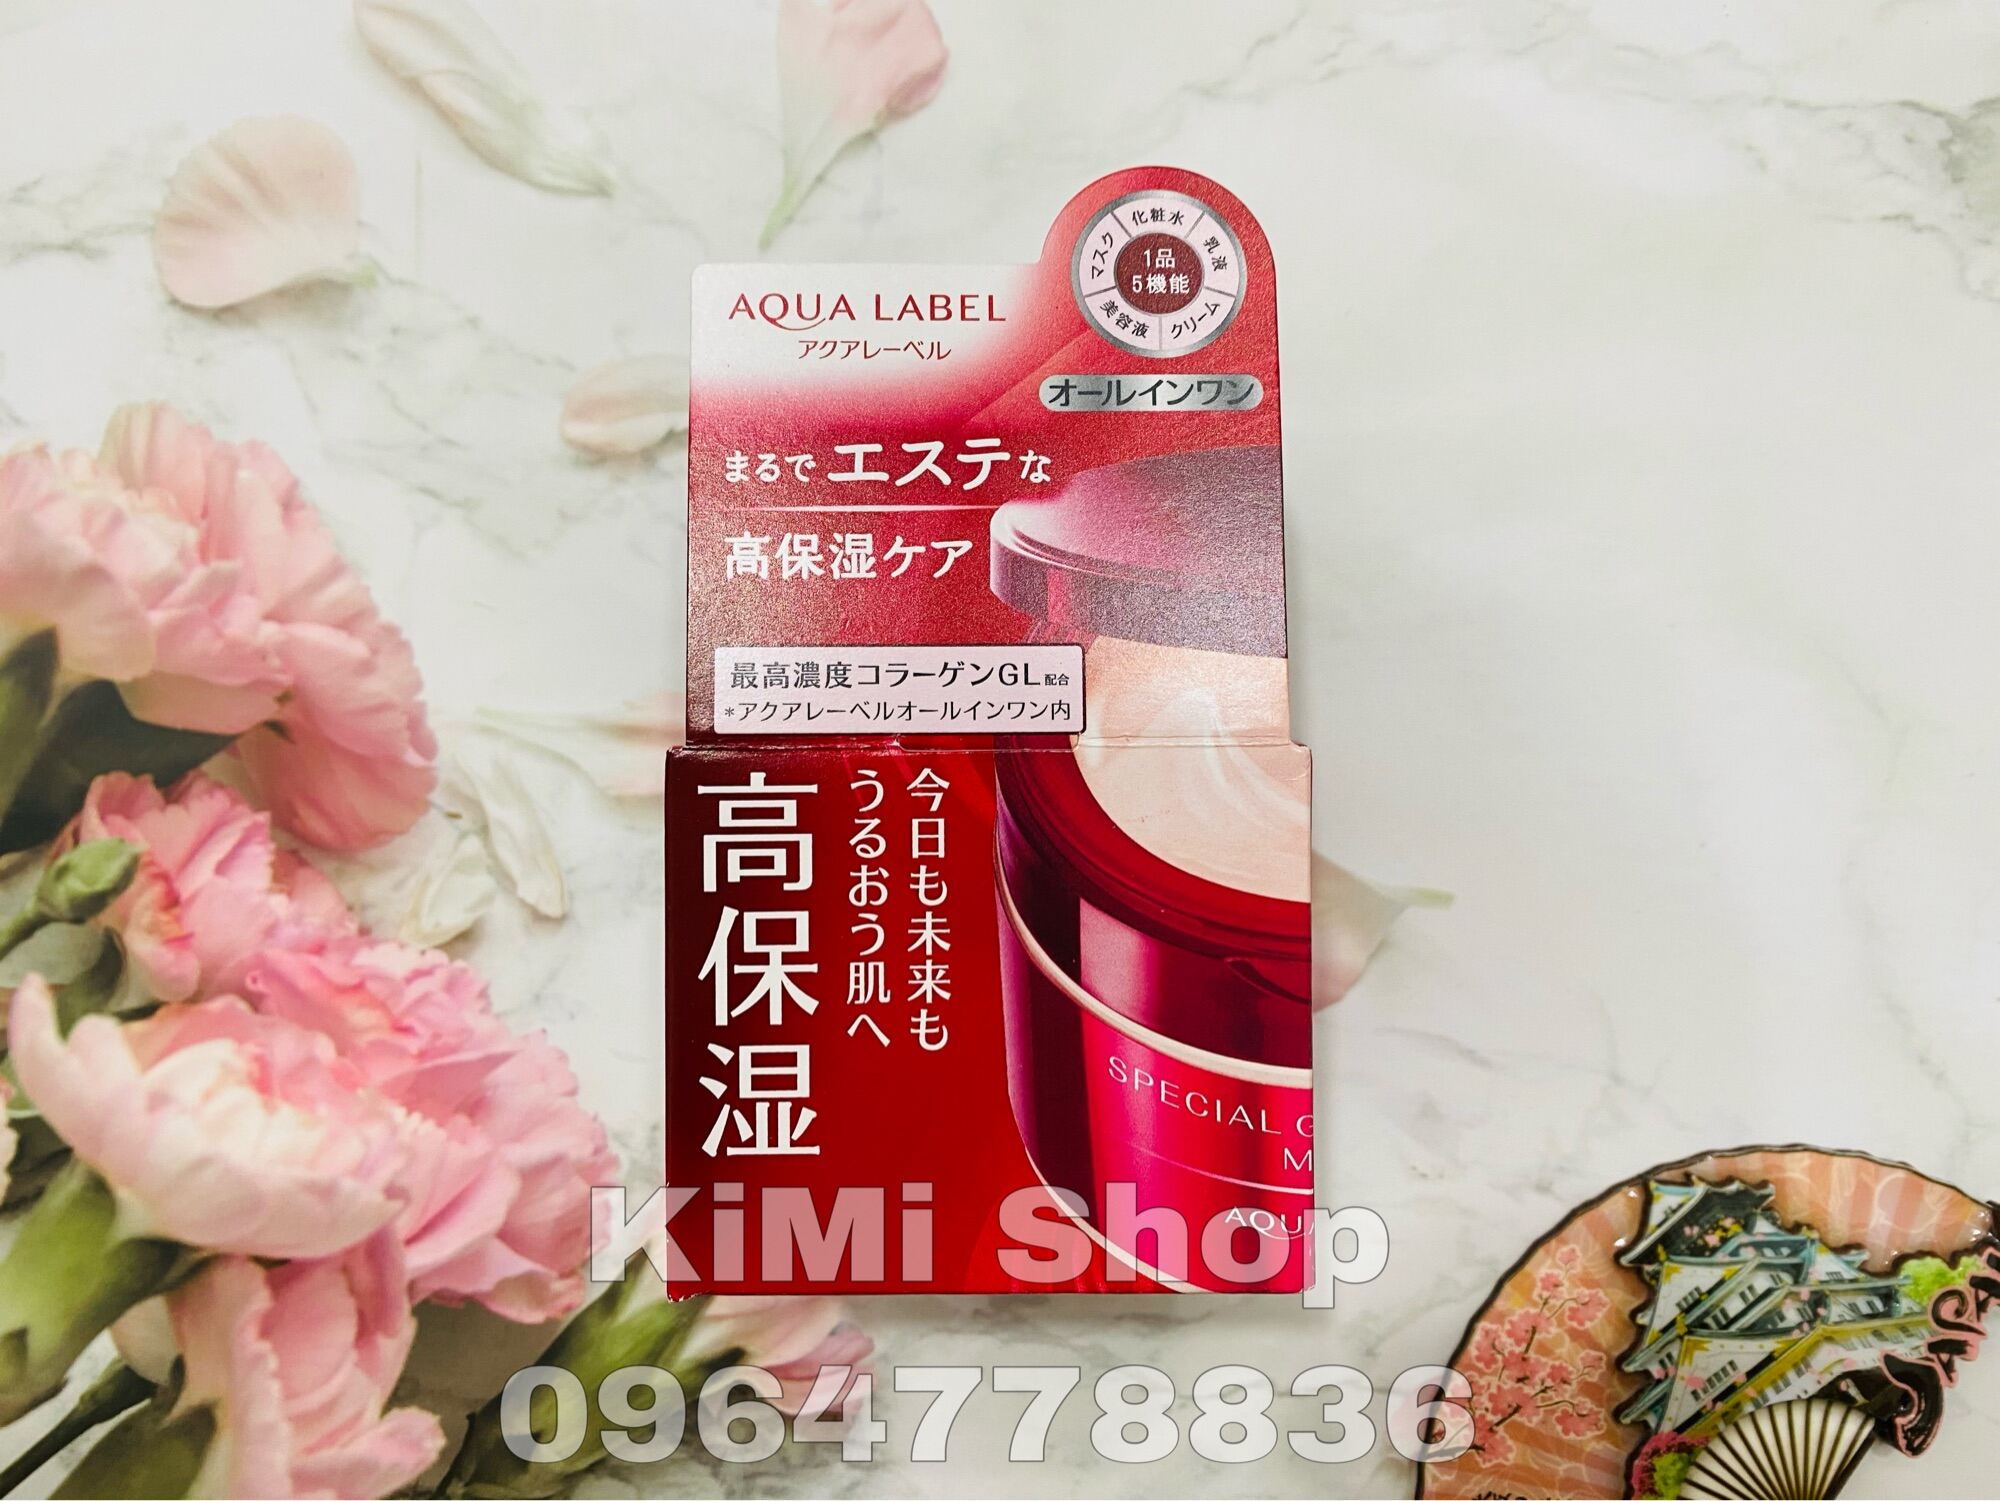 (MẪU MỚI ) Kem dưỡng da Shiseido Aqualabel Special Gel Cream 5 in 1